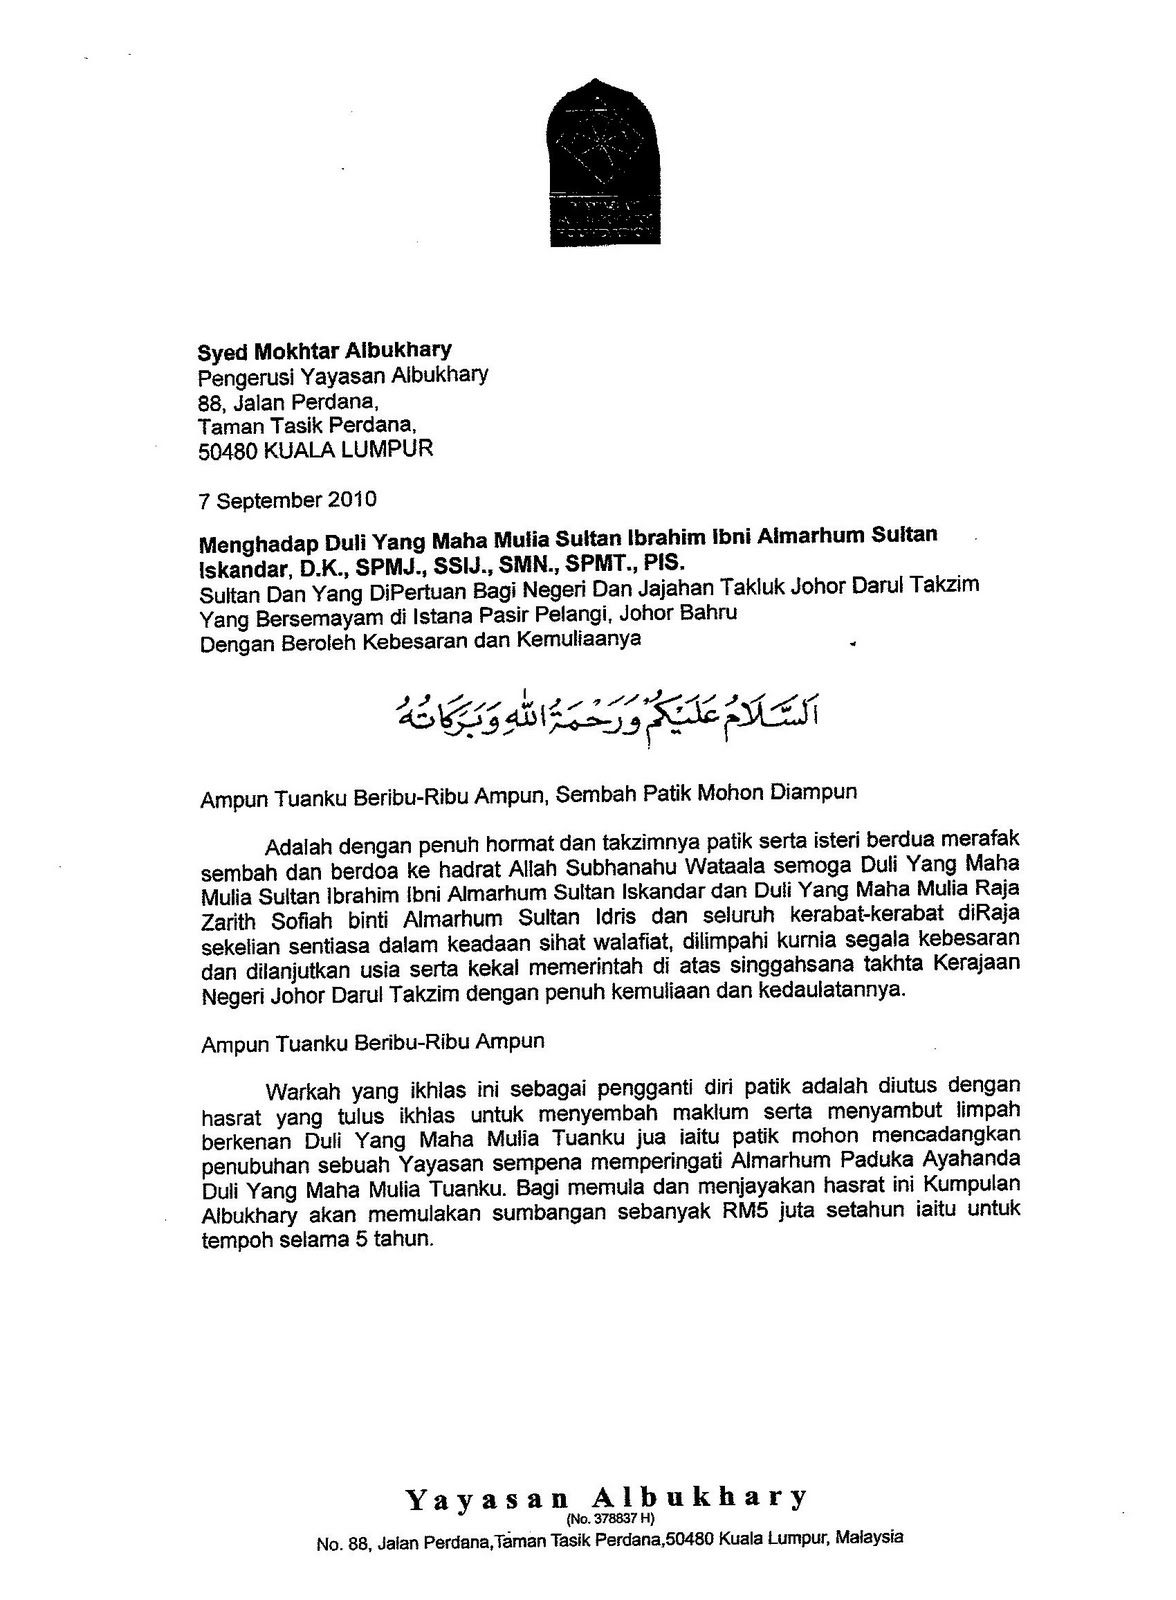 Contoh Surat Rayuan Pertukaran Kepada Sultan